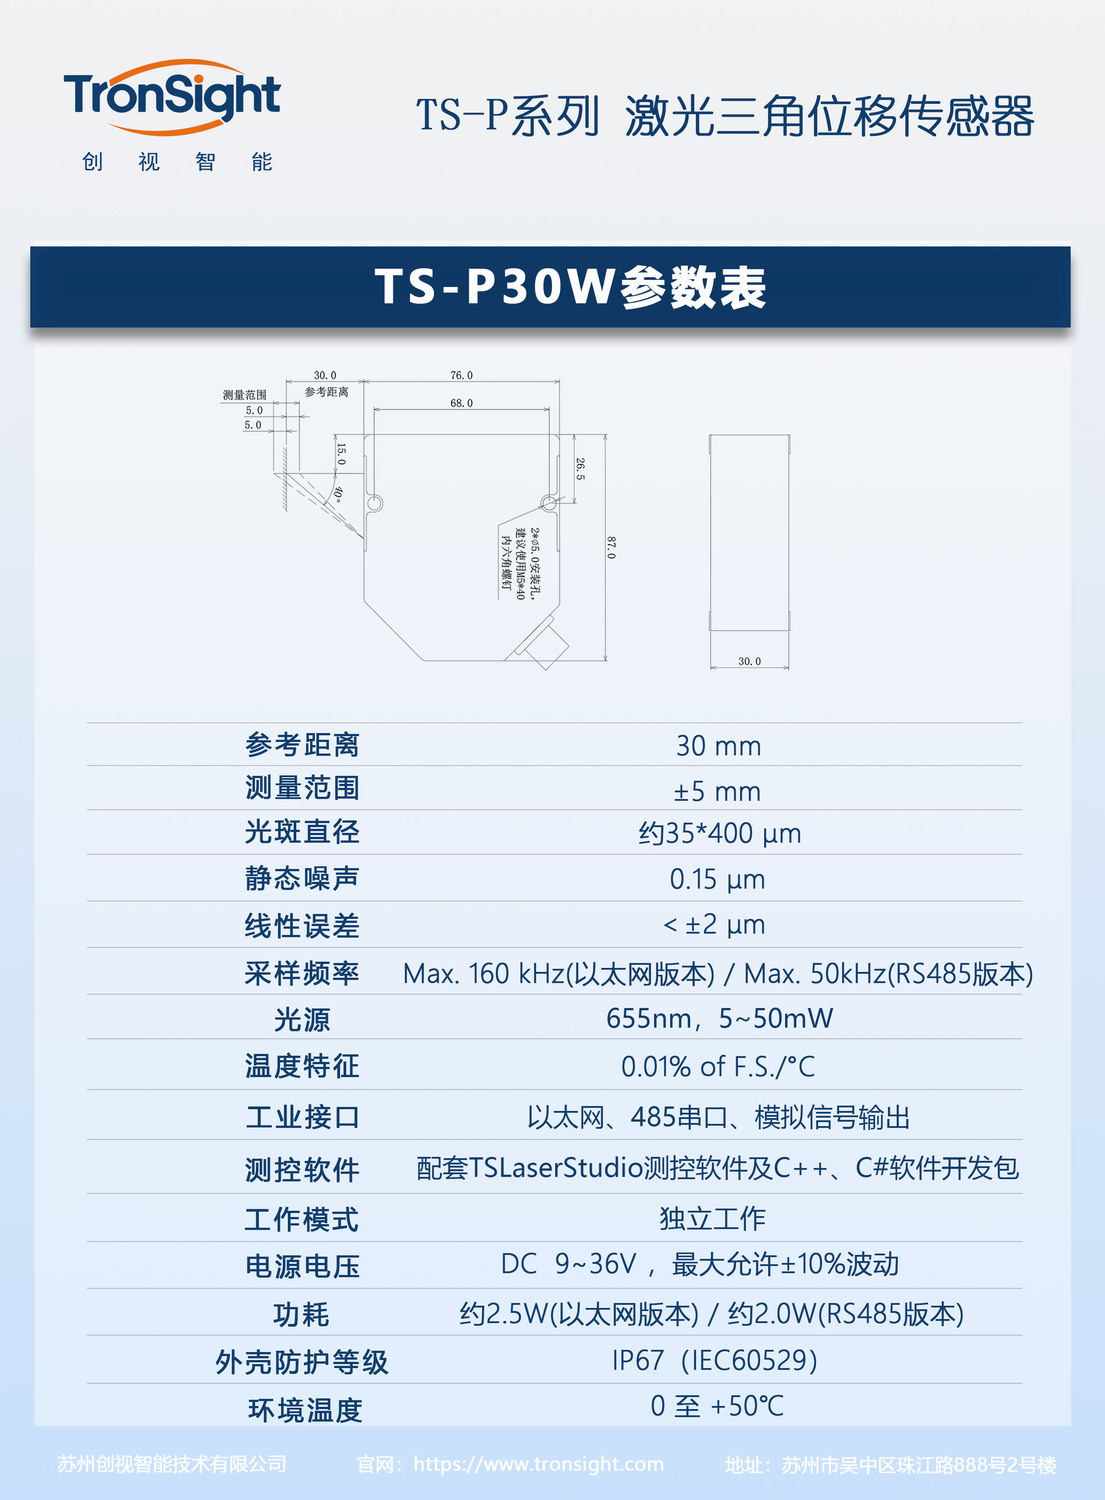 TS-P30W.jpg